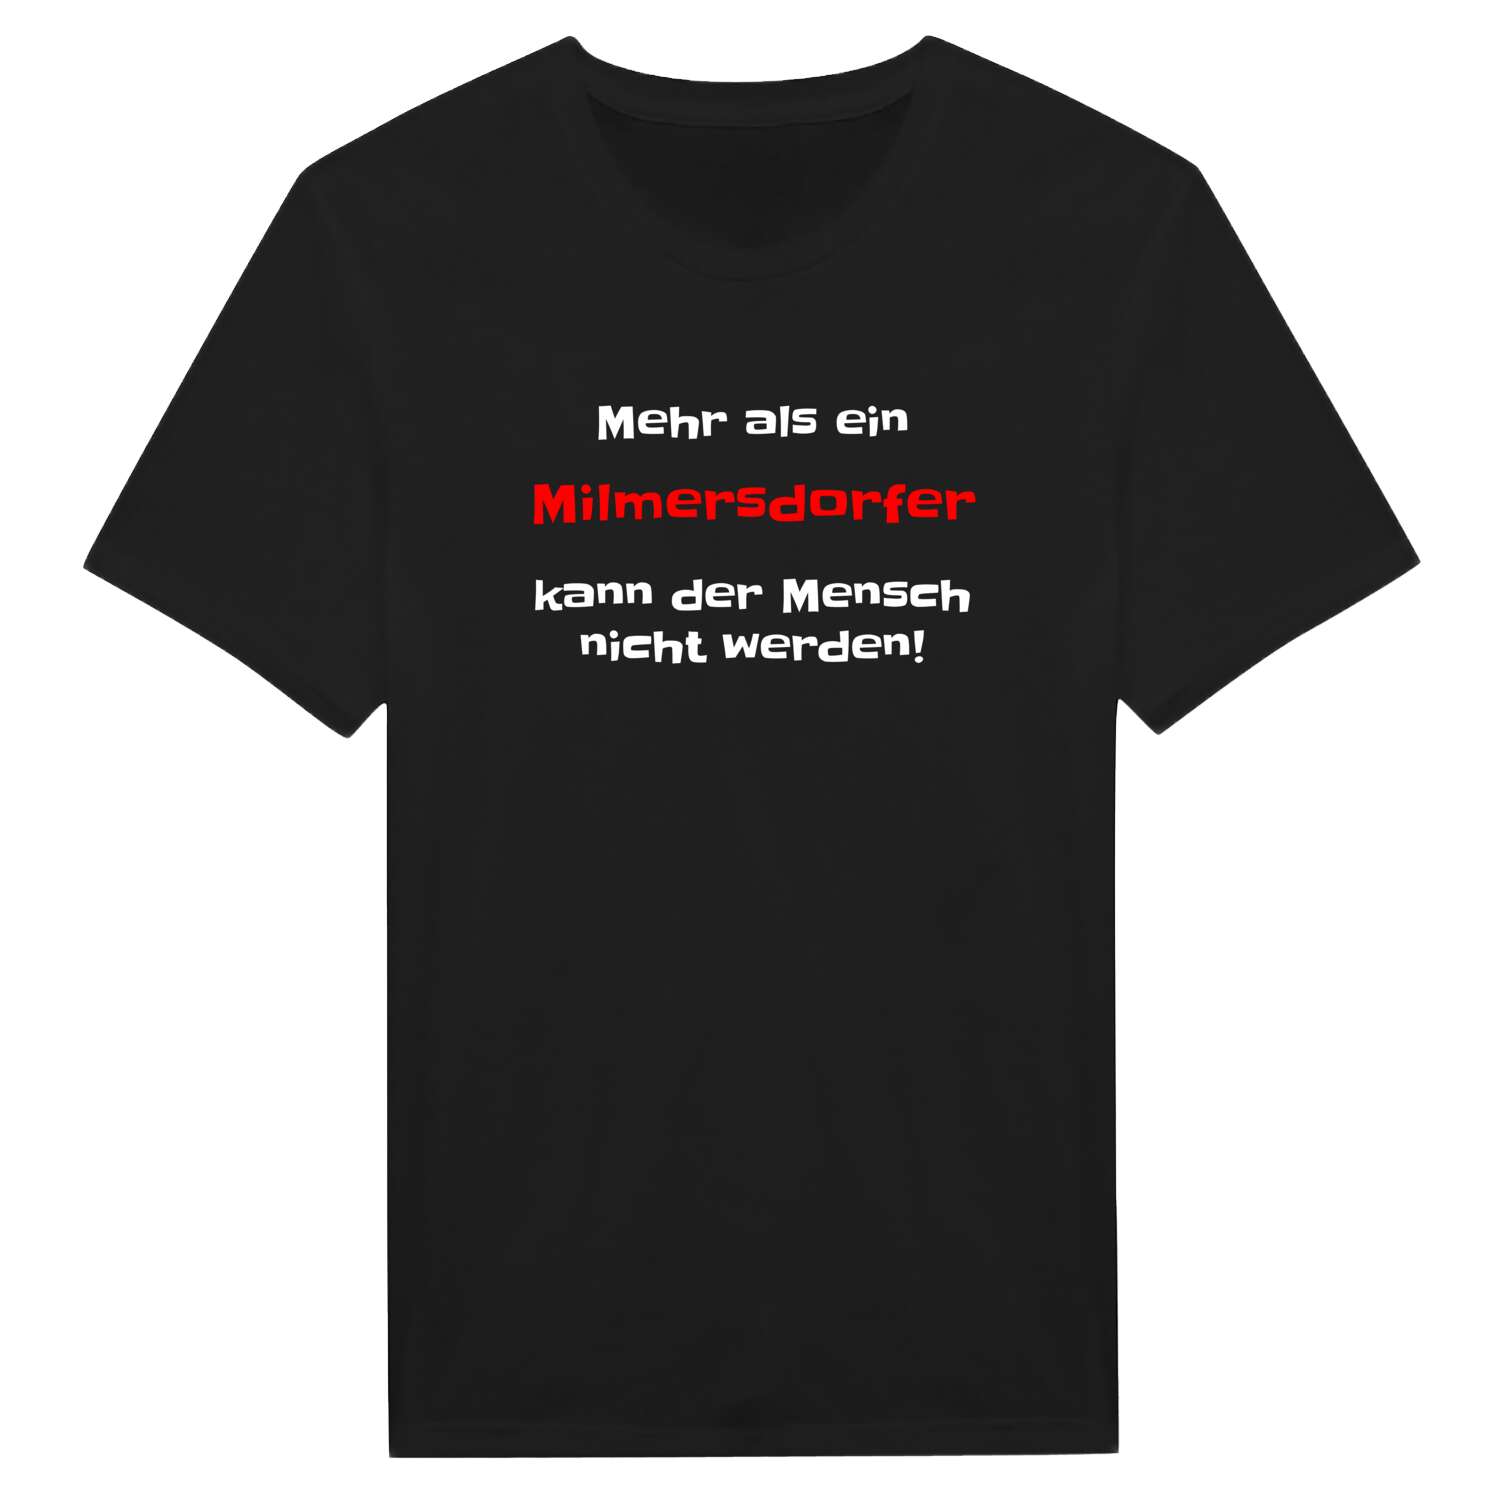 Milmersdorf T-Shirt »Mehr als ein«